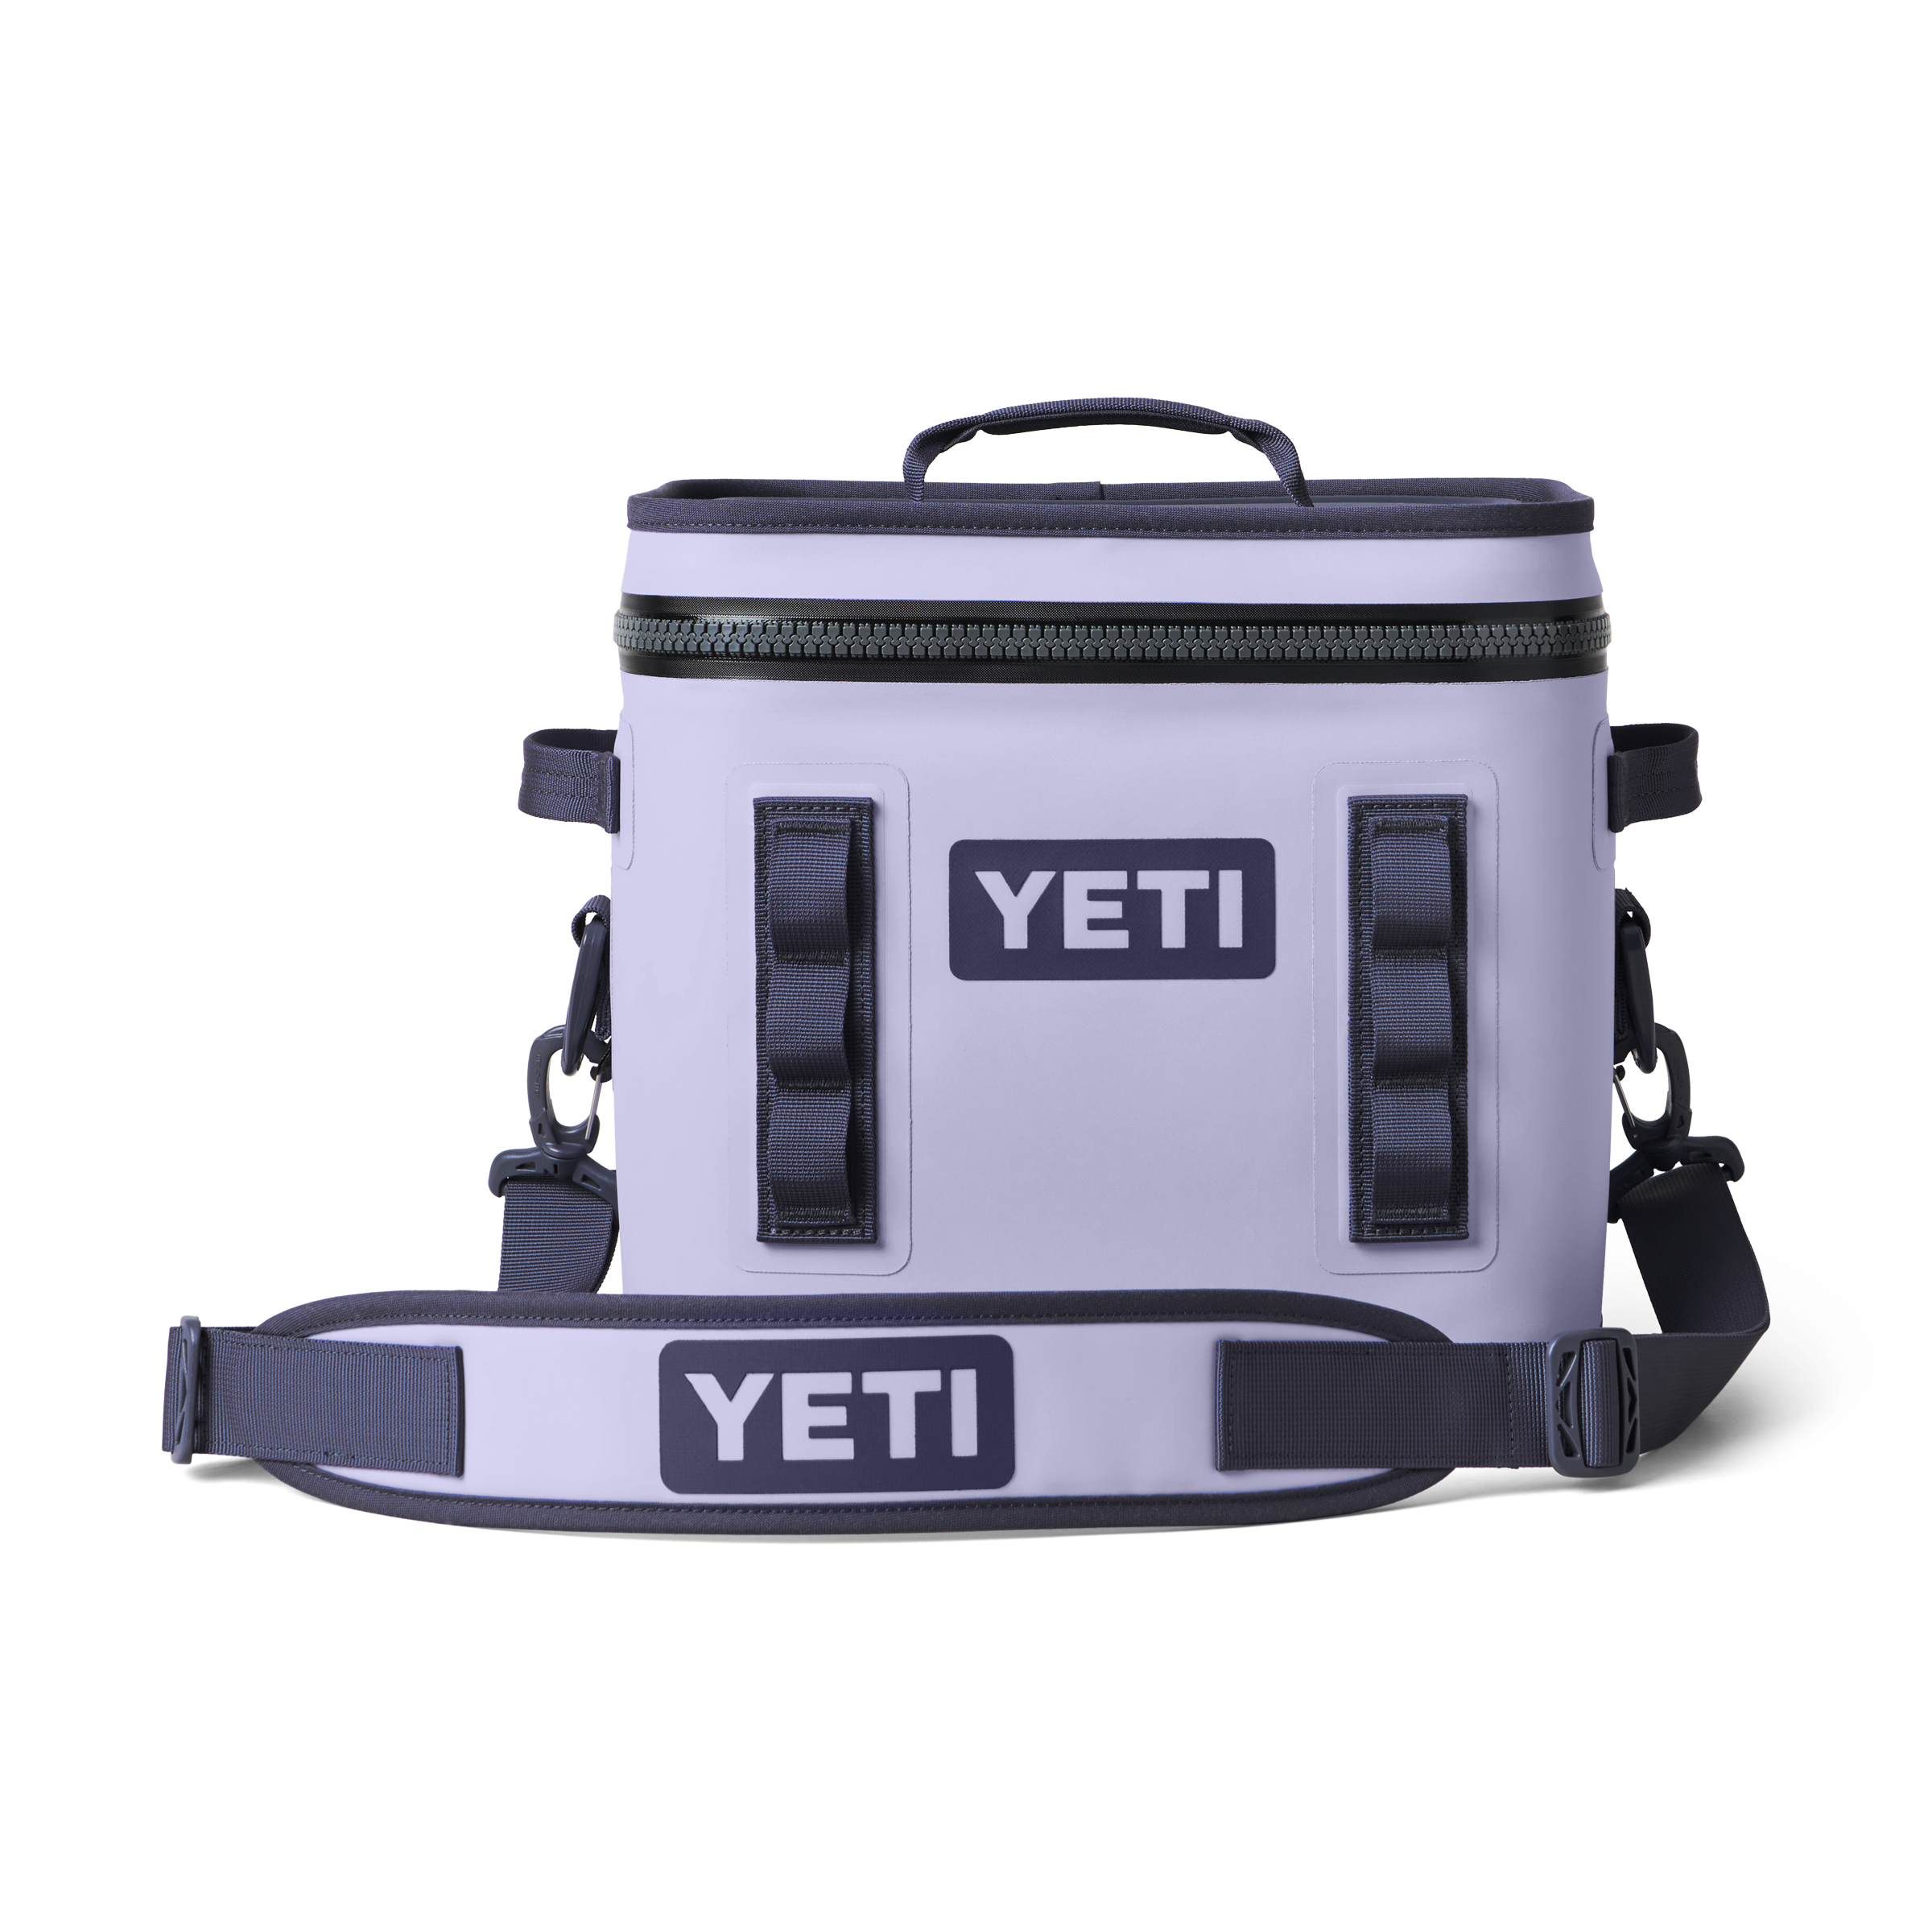 🌟 YETI 5 Gallon Loadout Bucket Ultimate Accessory: The YETI